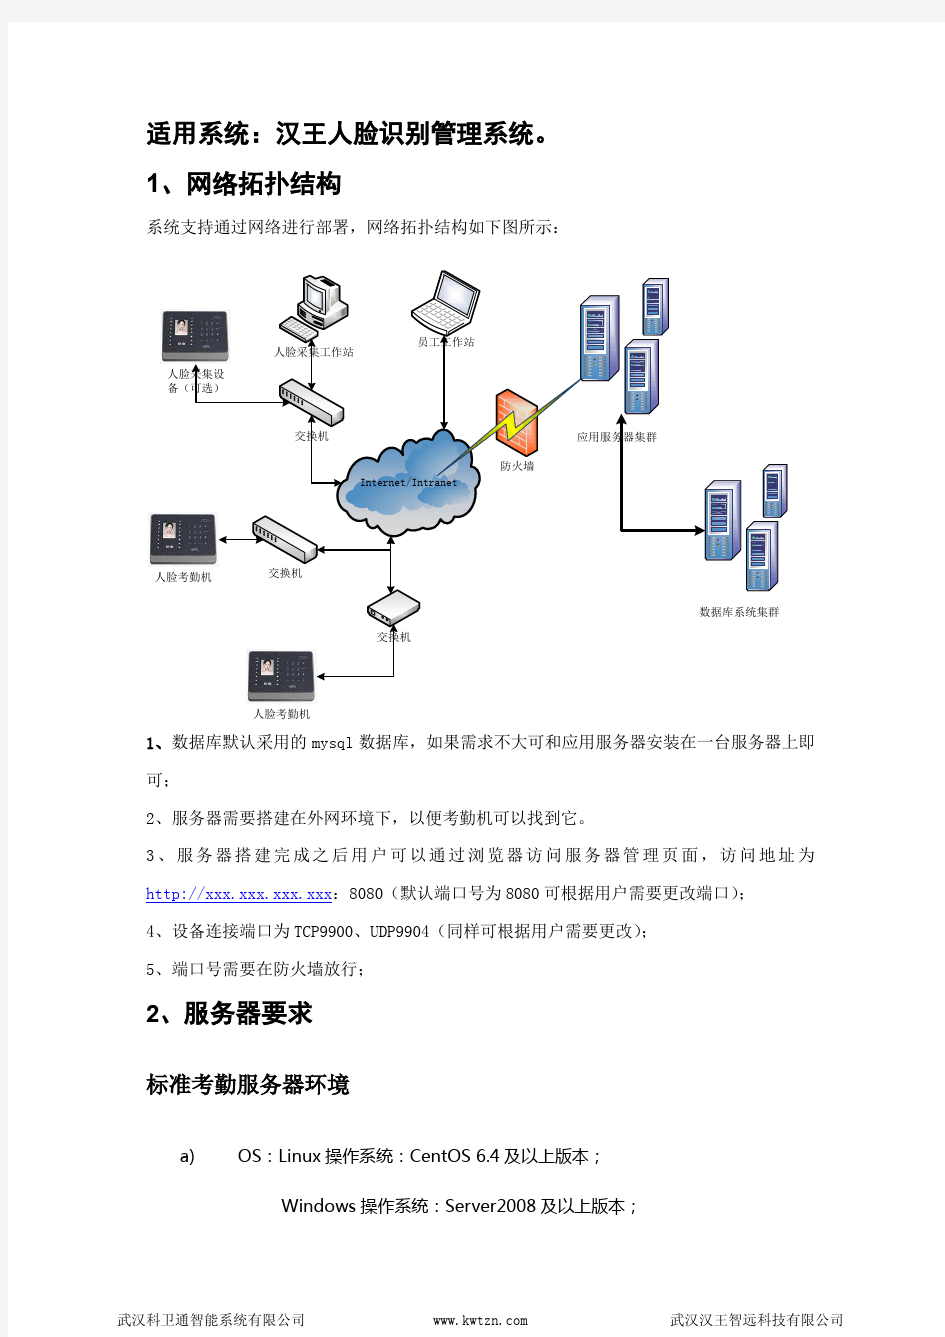 汉王人脸识别管理系统环境要求及操作流程(BS版)